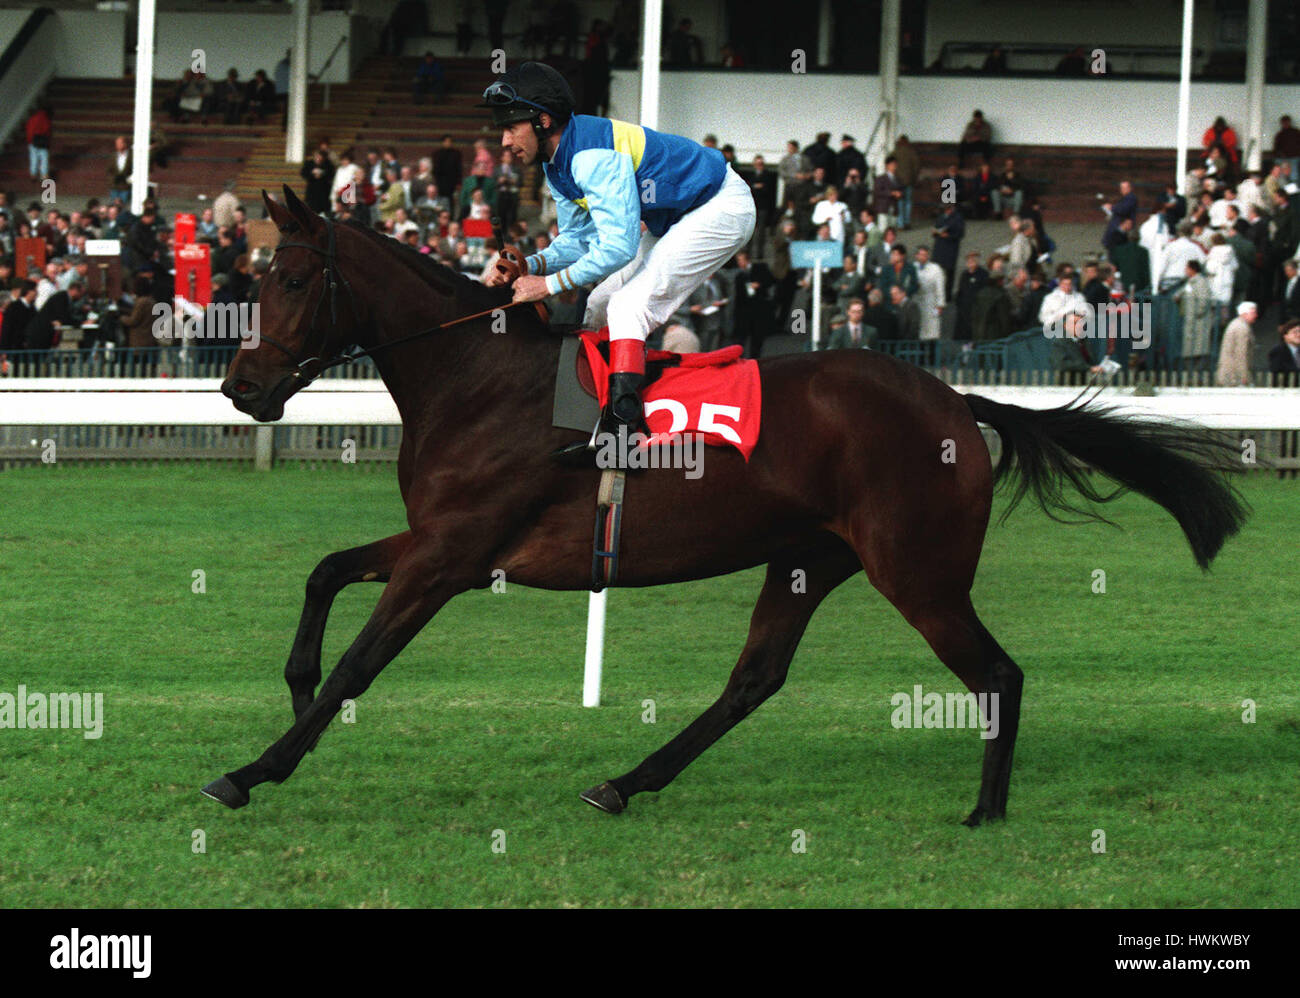 FLEUR DE TAL RIDDEN J CARROLL RACEHORSE 30.9.93 07 October 1993 Stock Photo